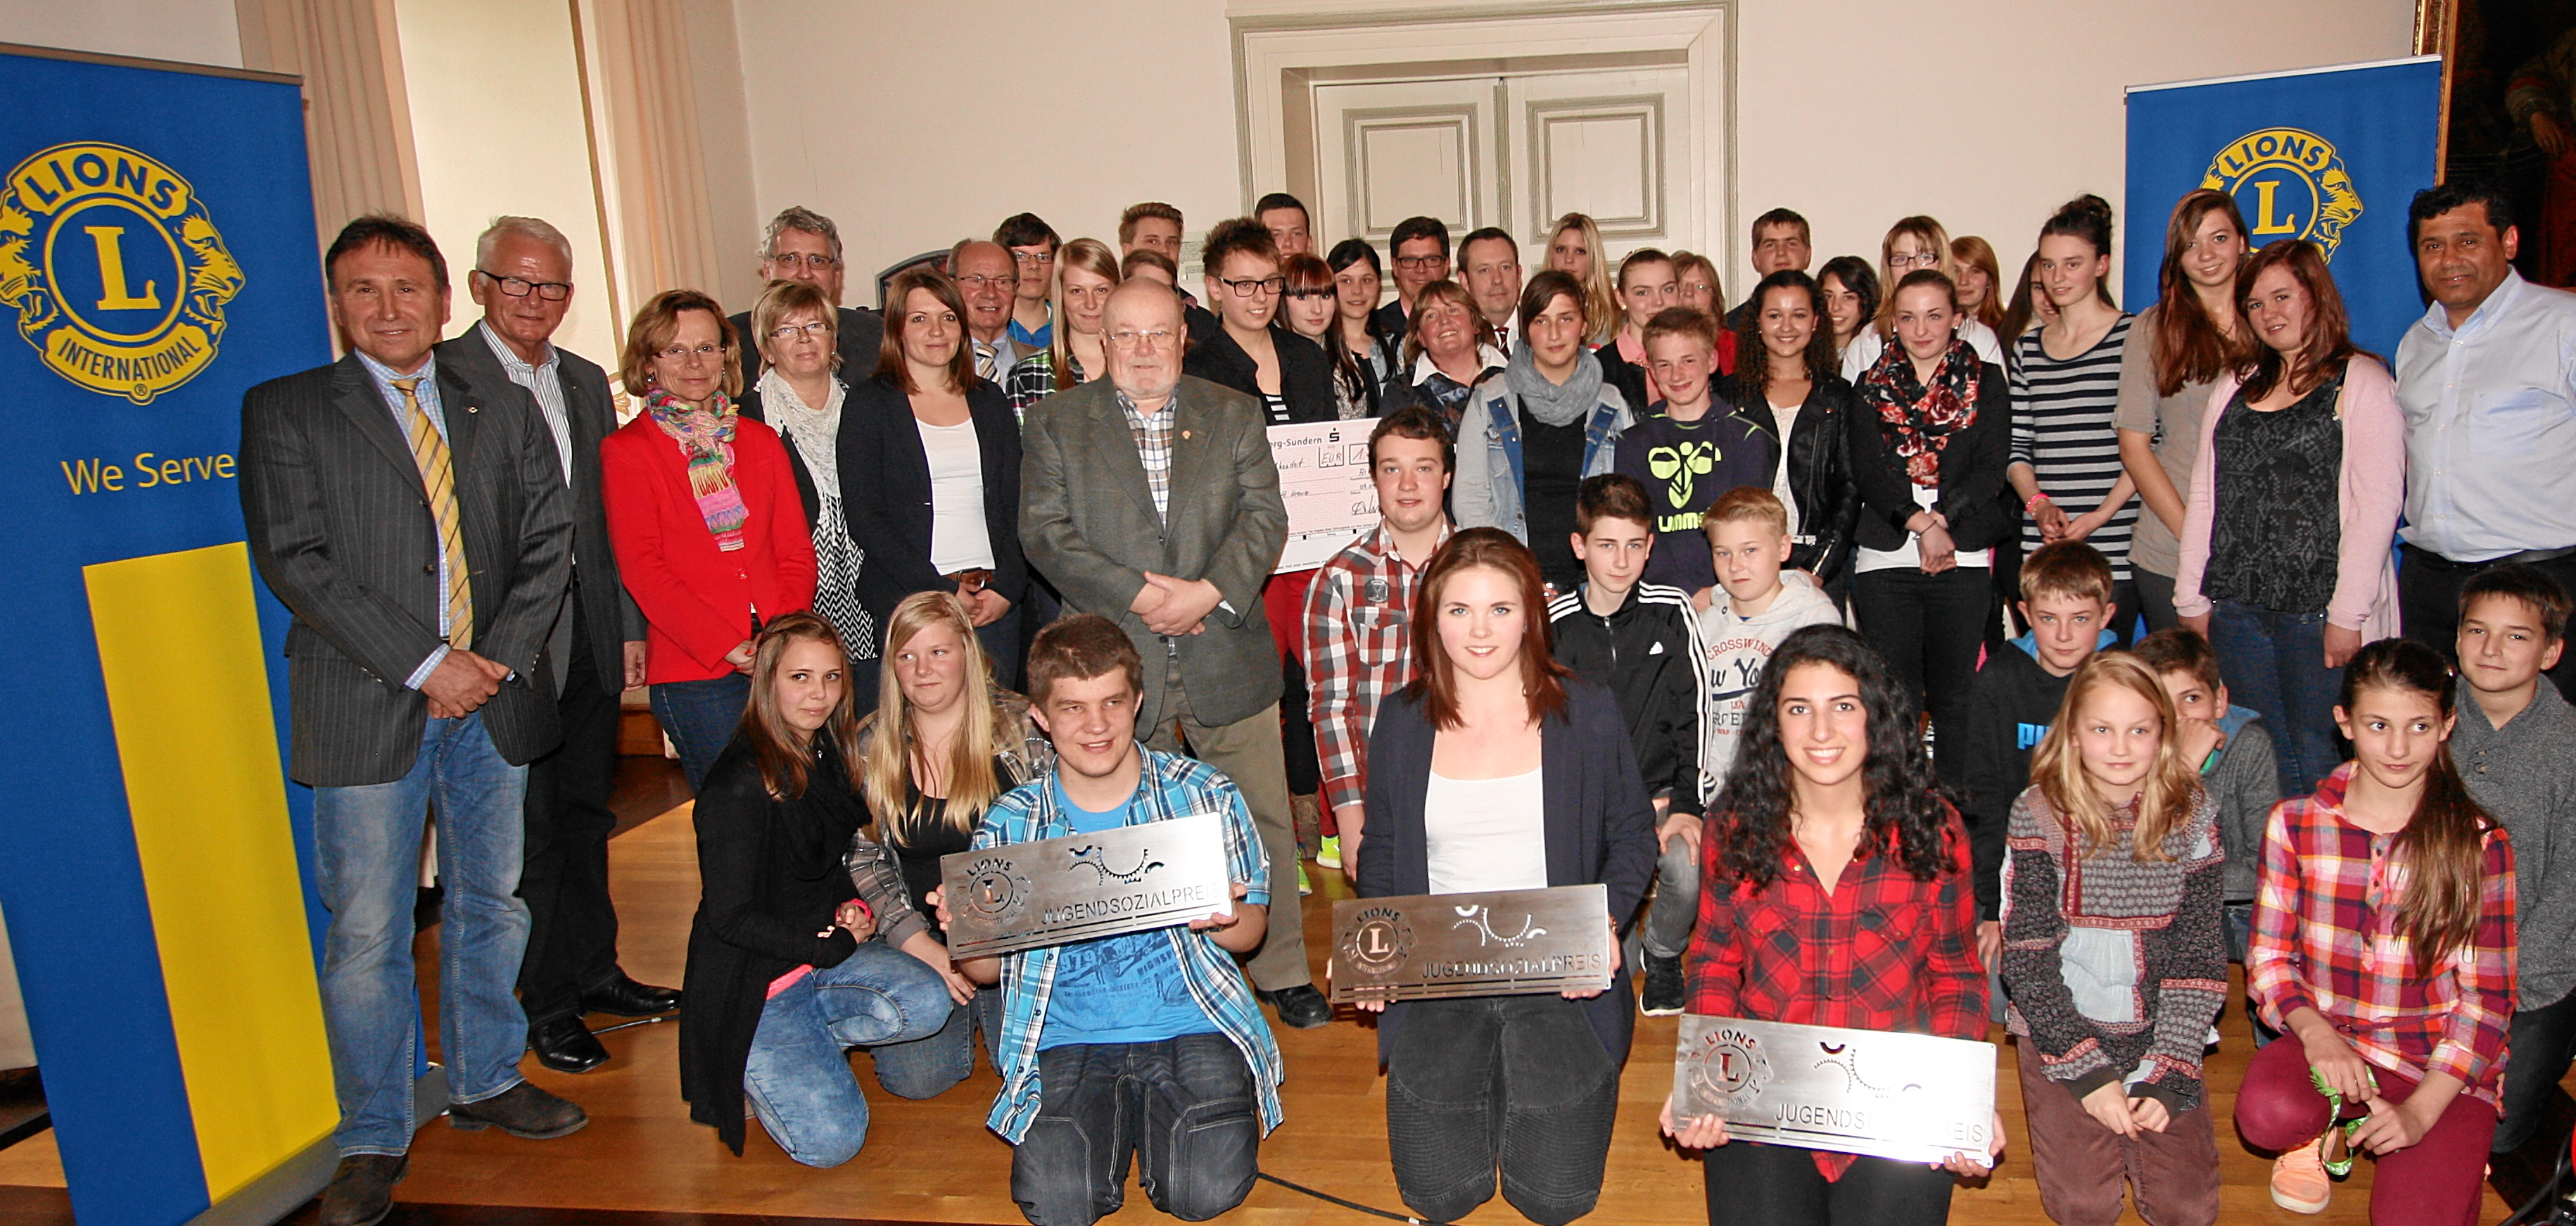 Der Lions Club Arnsberg-Sundern vergibt den Jugendsozialpreis (Hier ein Bild aus dem Jahr 2014). Junge Menschen sollen motiviert werden, soziales Engagement zu entwickeln.